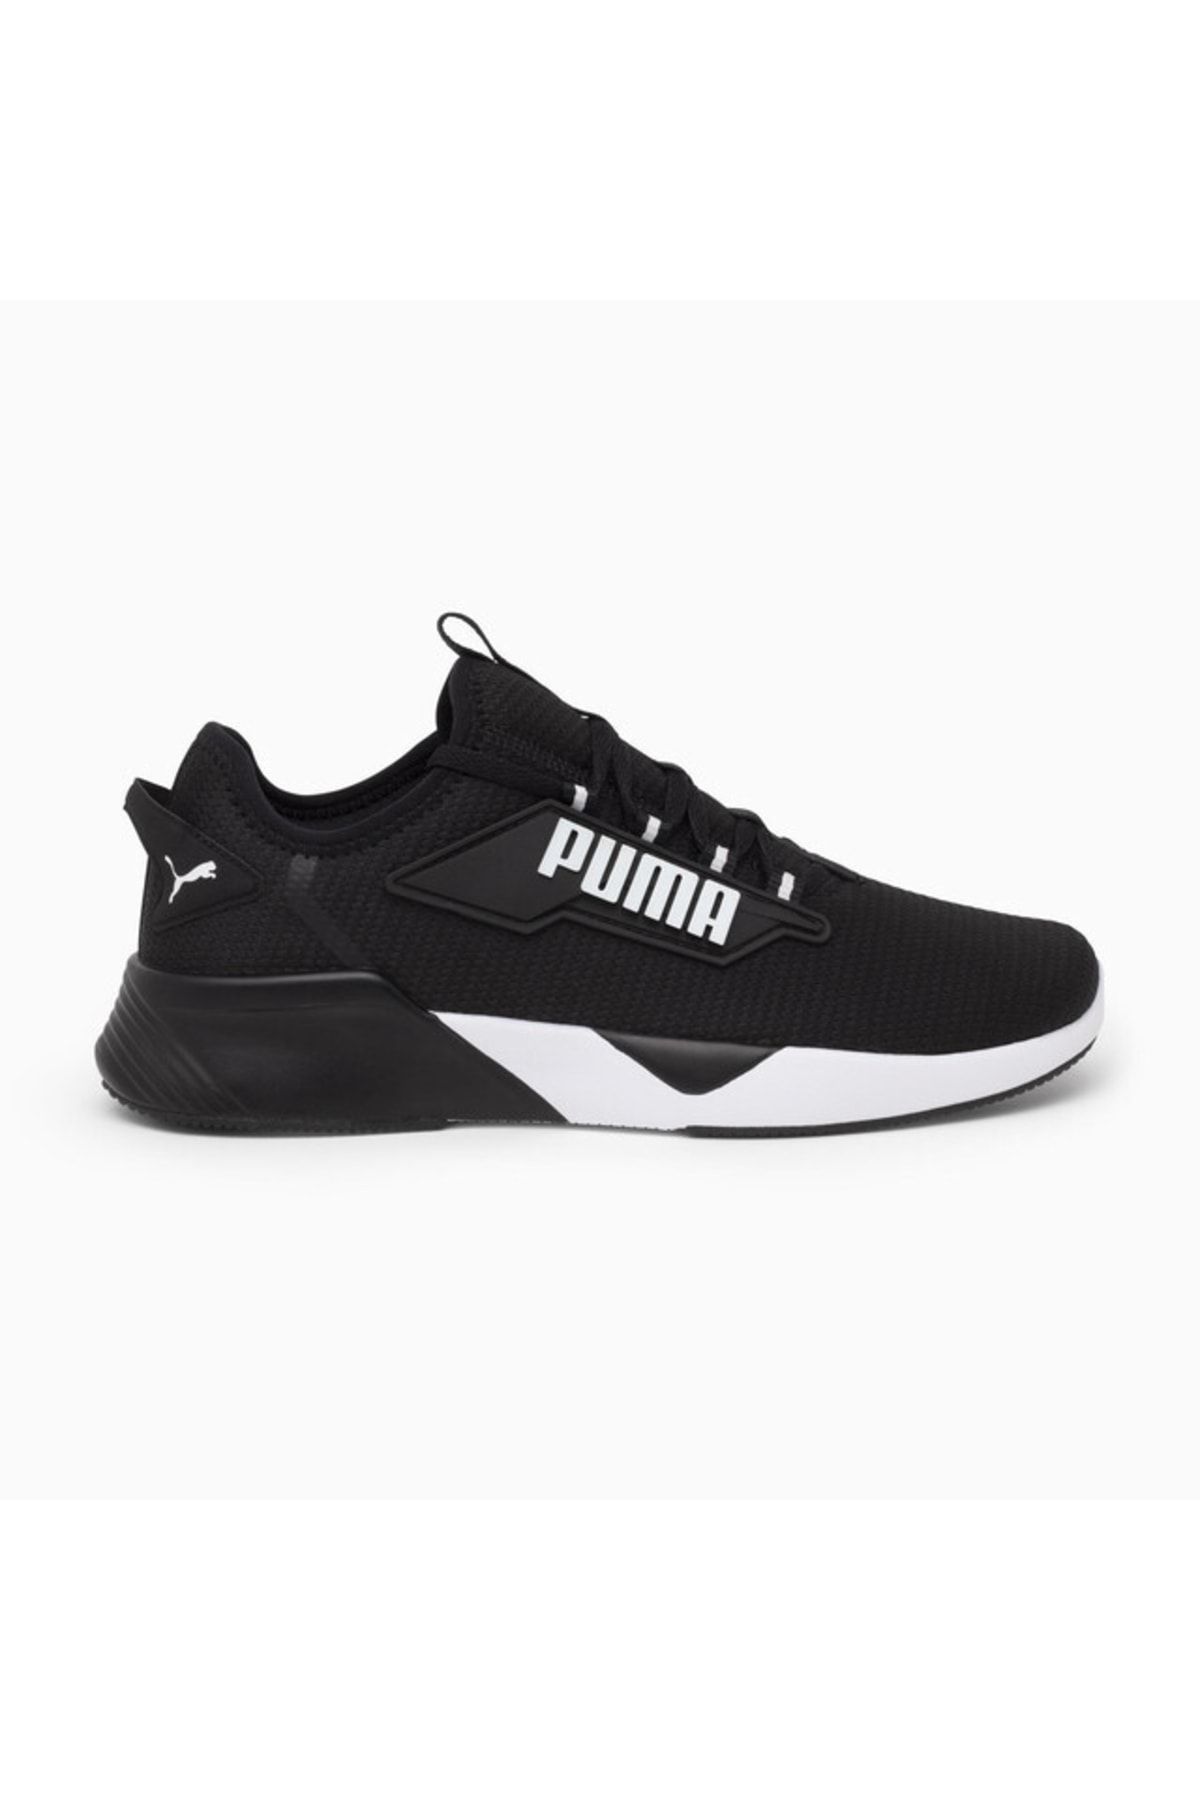 Puma Retaliate 2 Siyah Kadın Günlük Spor Ayakkabı